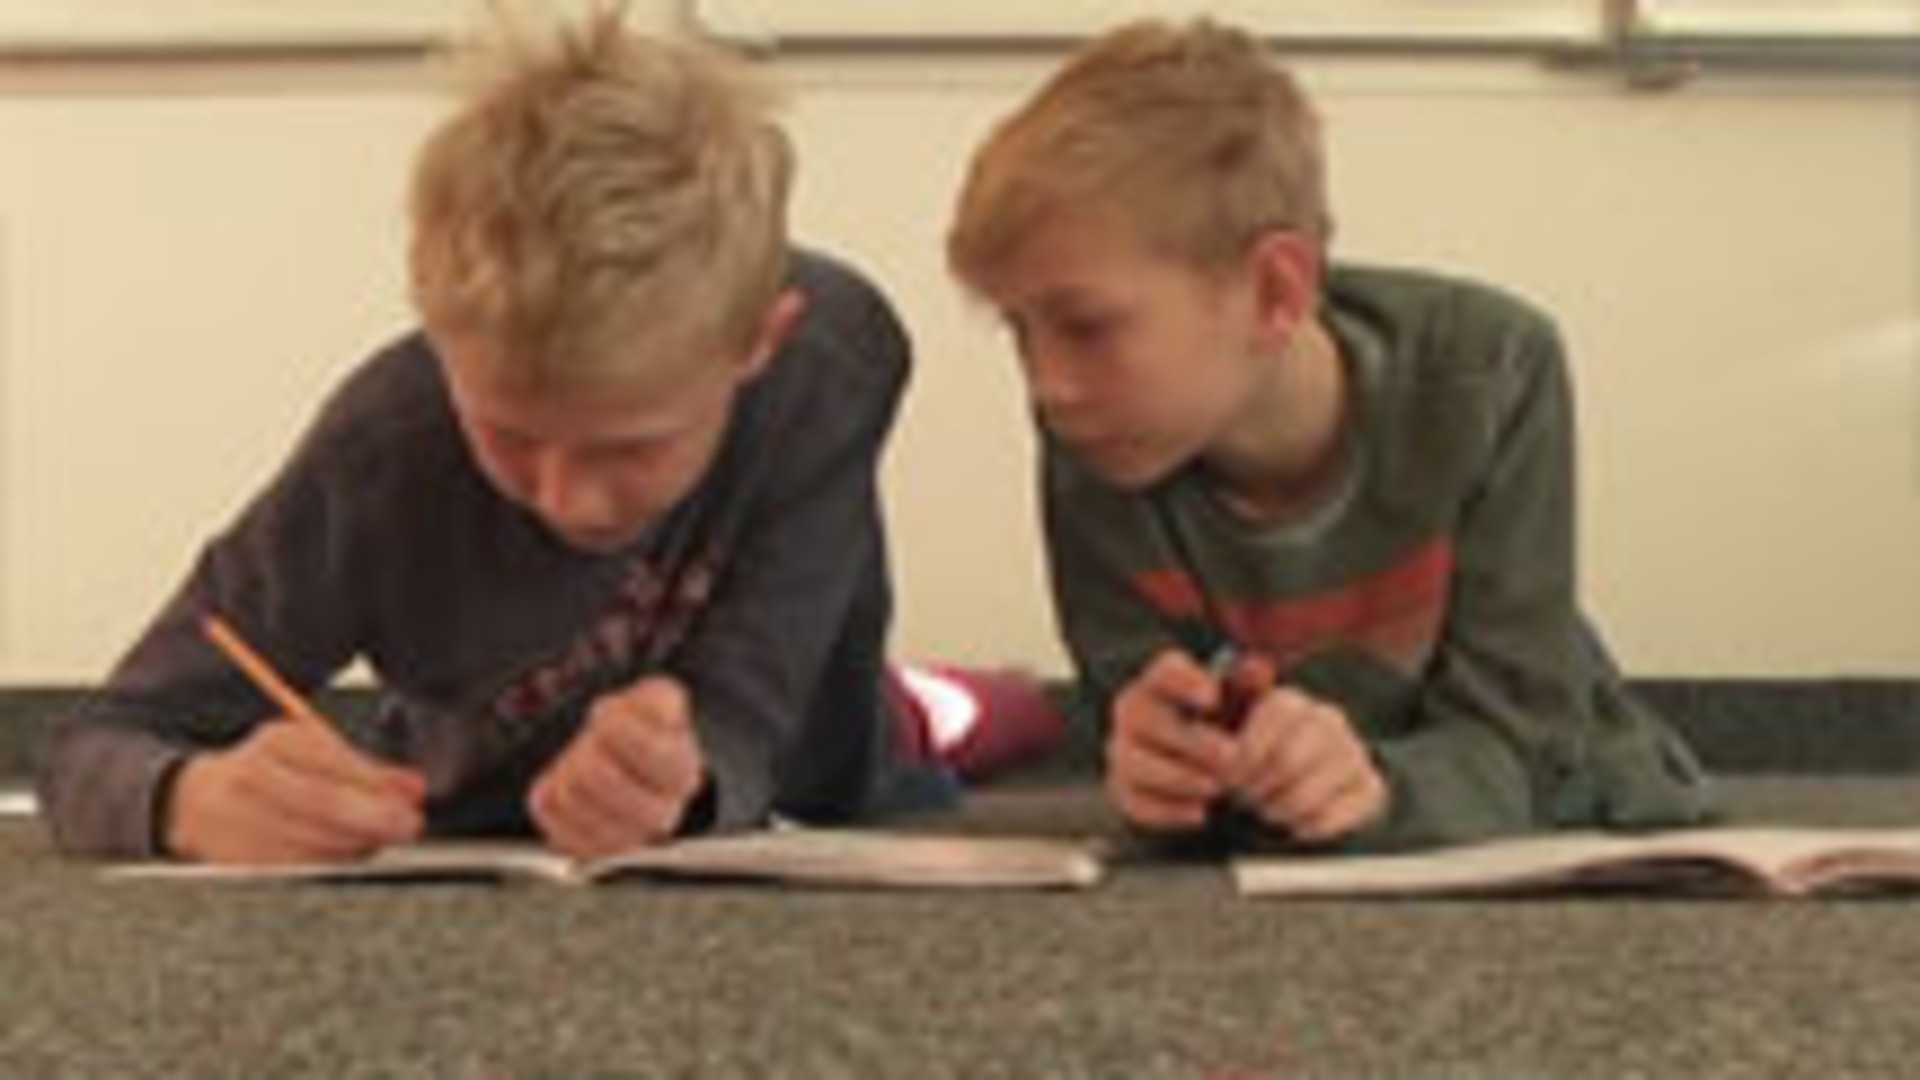 Zwei Schüler der Gebhardschule Konstanz, einer Gemeinschaftsschule, helfen sich gegenseitig beim Lösen von Mathe-Aufgaben.